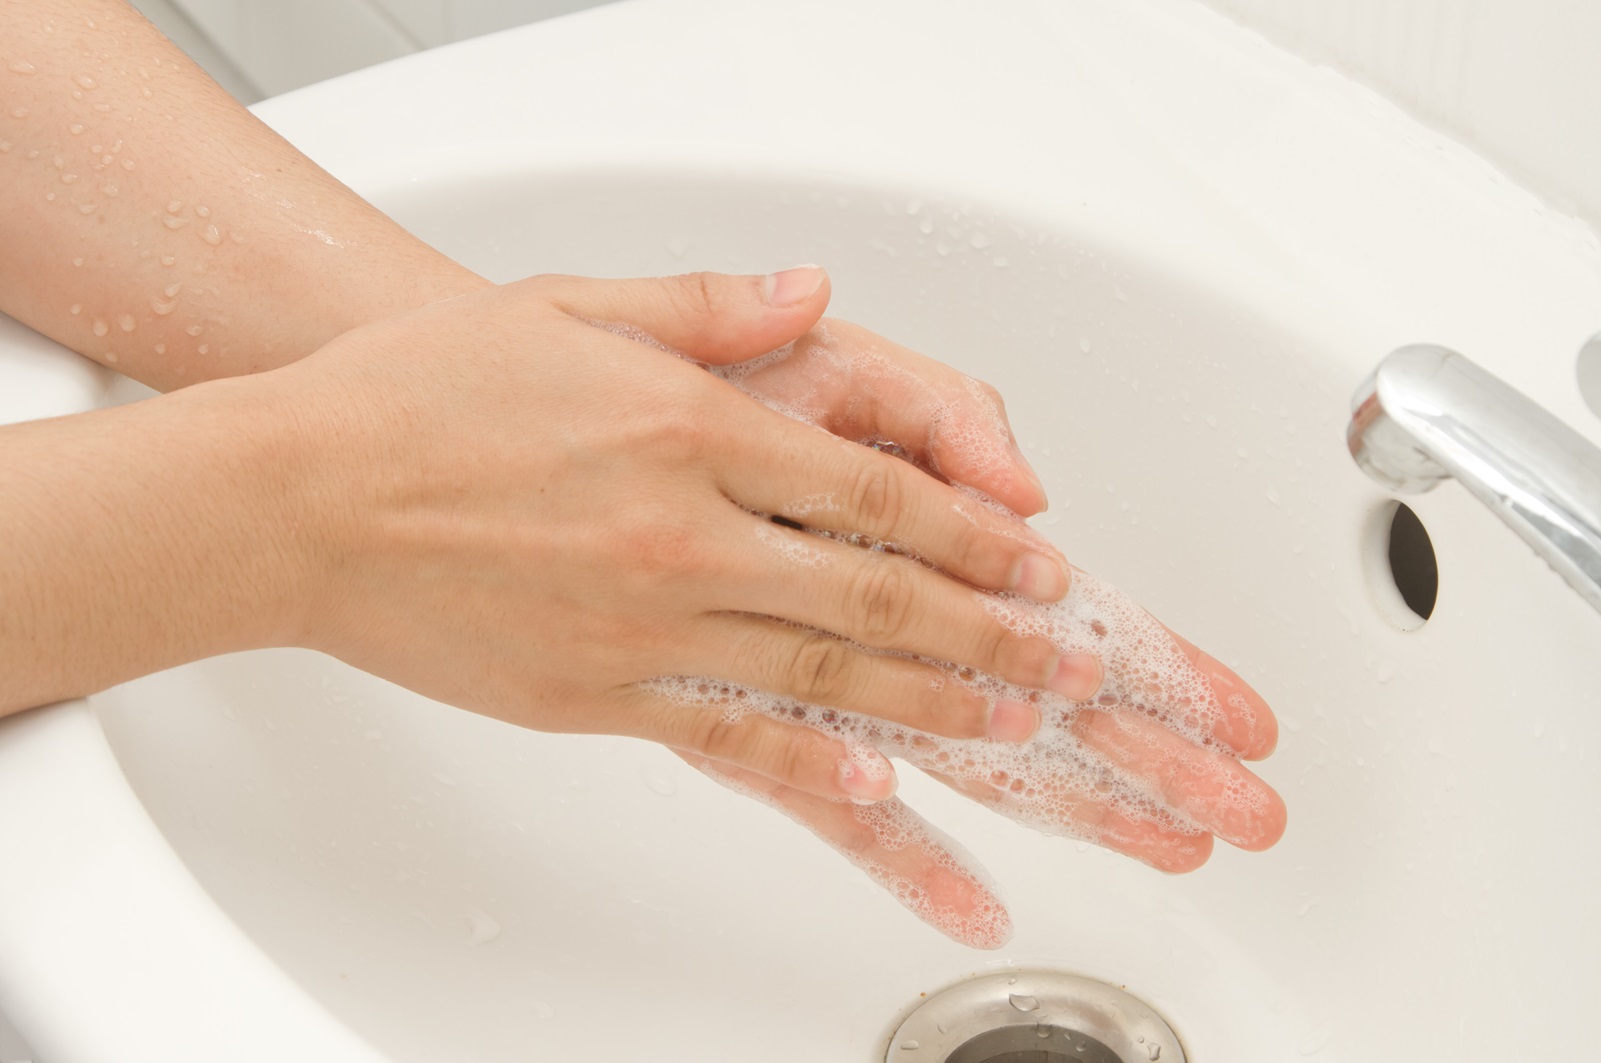 Billede af hænder, der vaskes